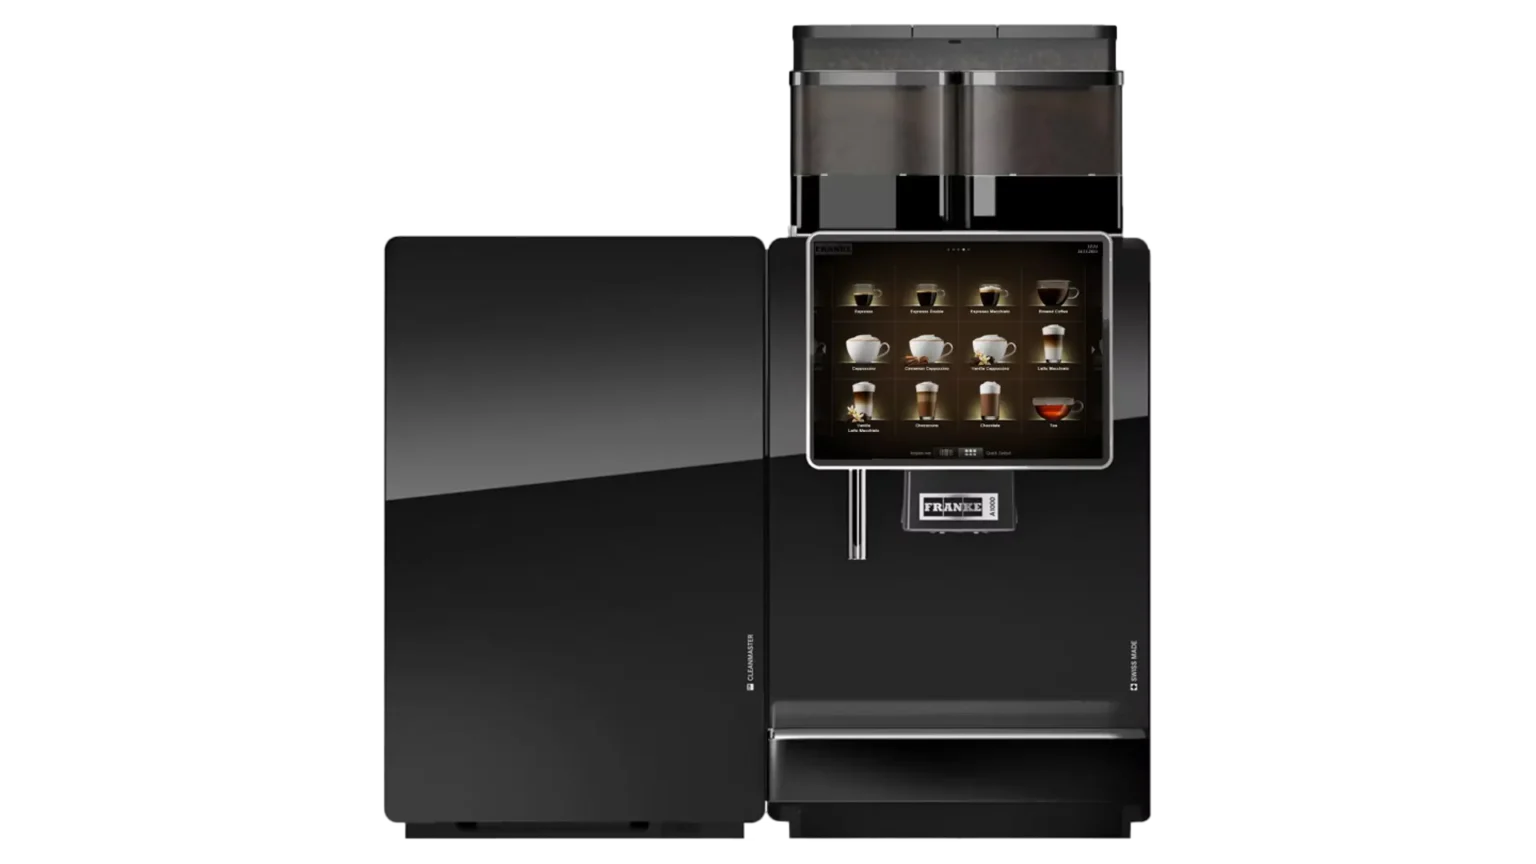 υπεραυτόματη μηχανή καφέ A1000 της Franke